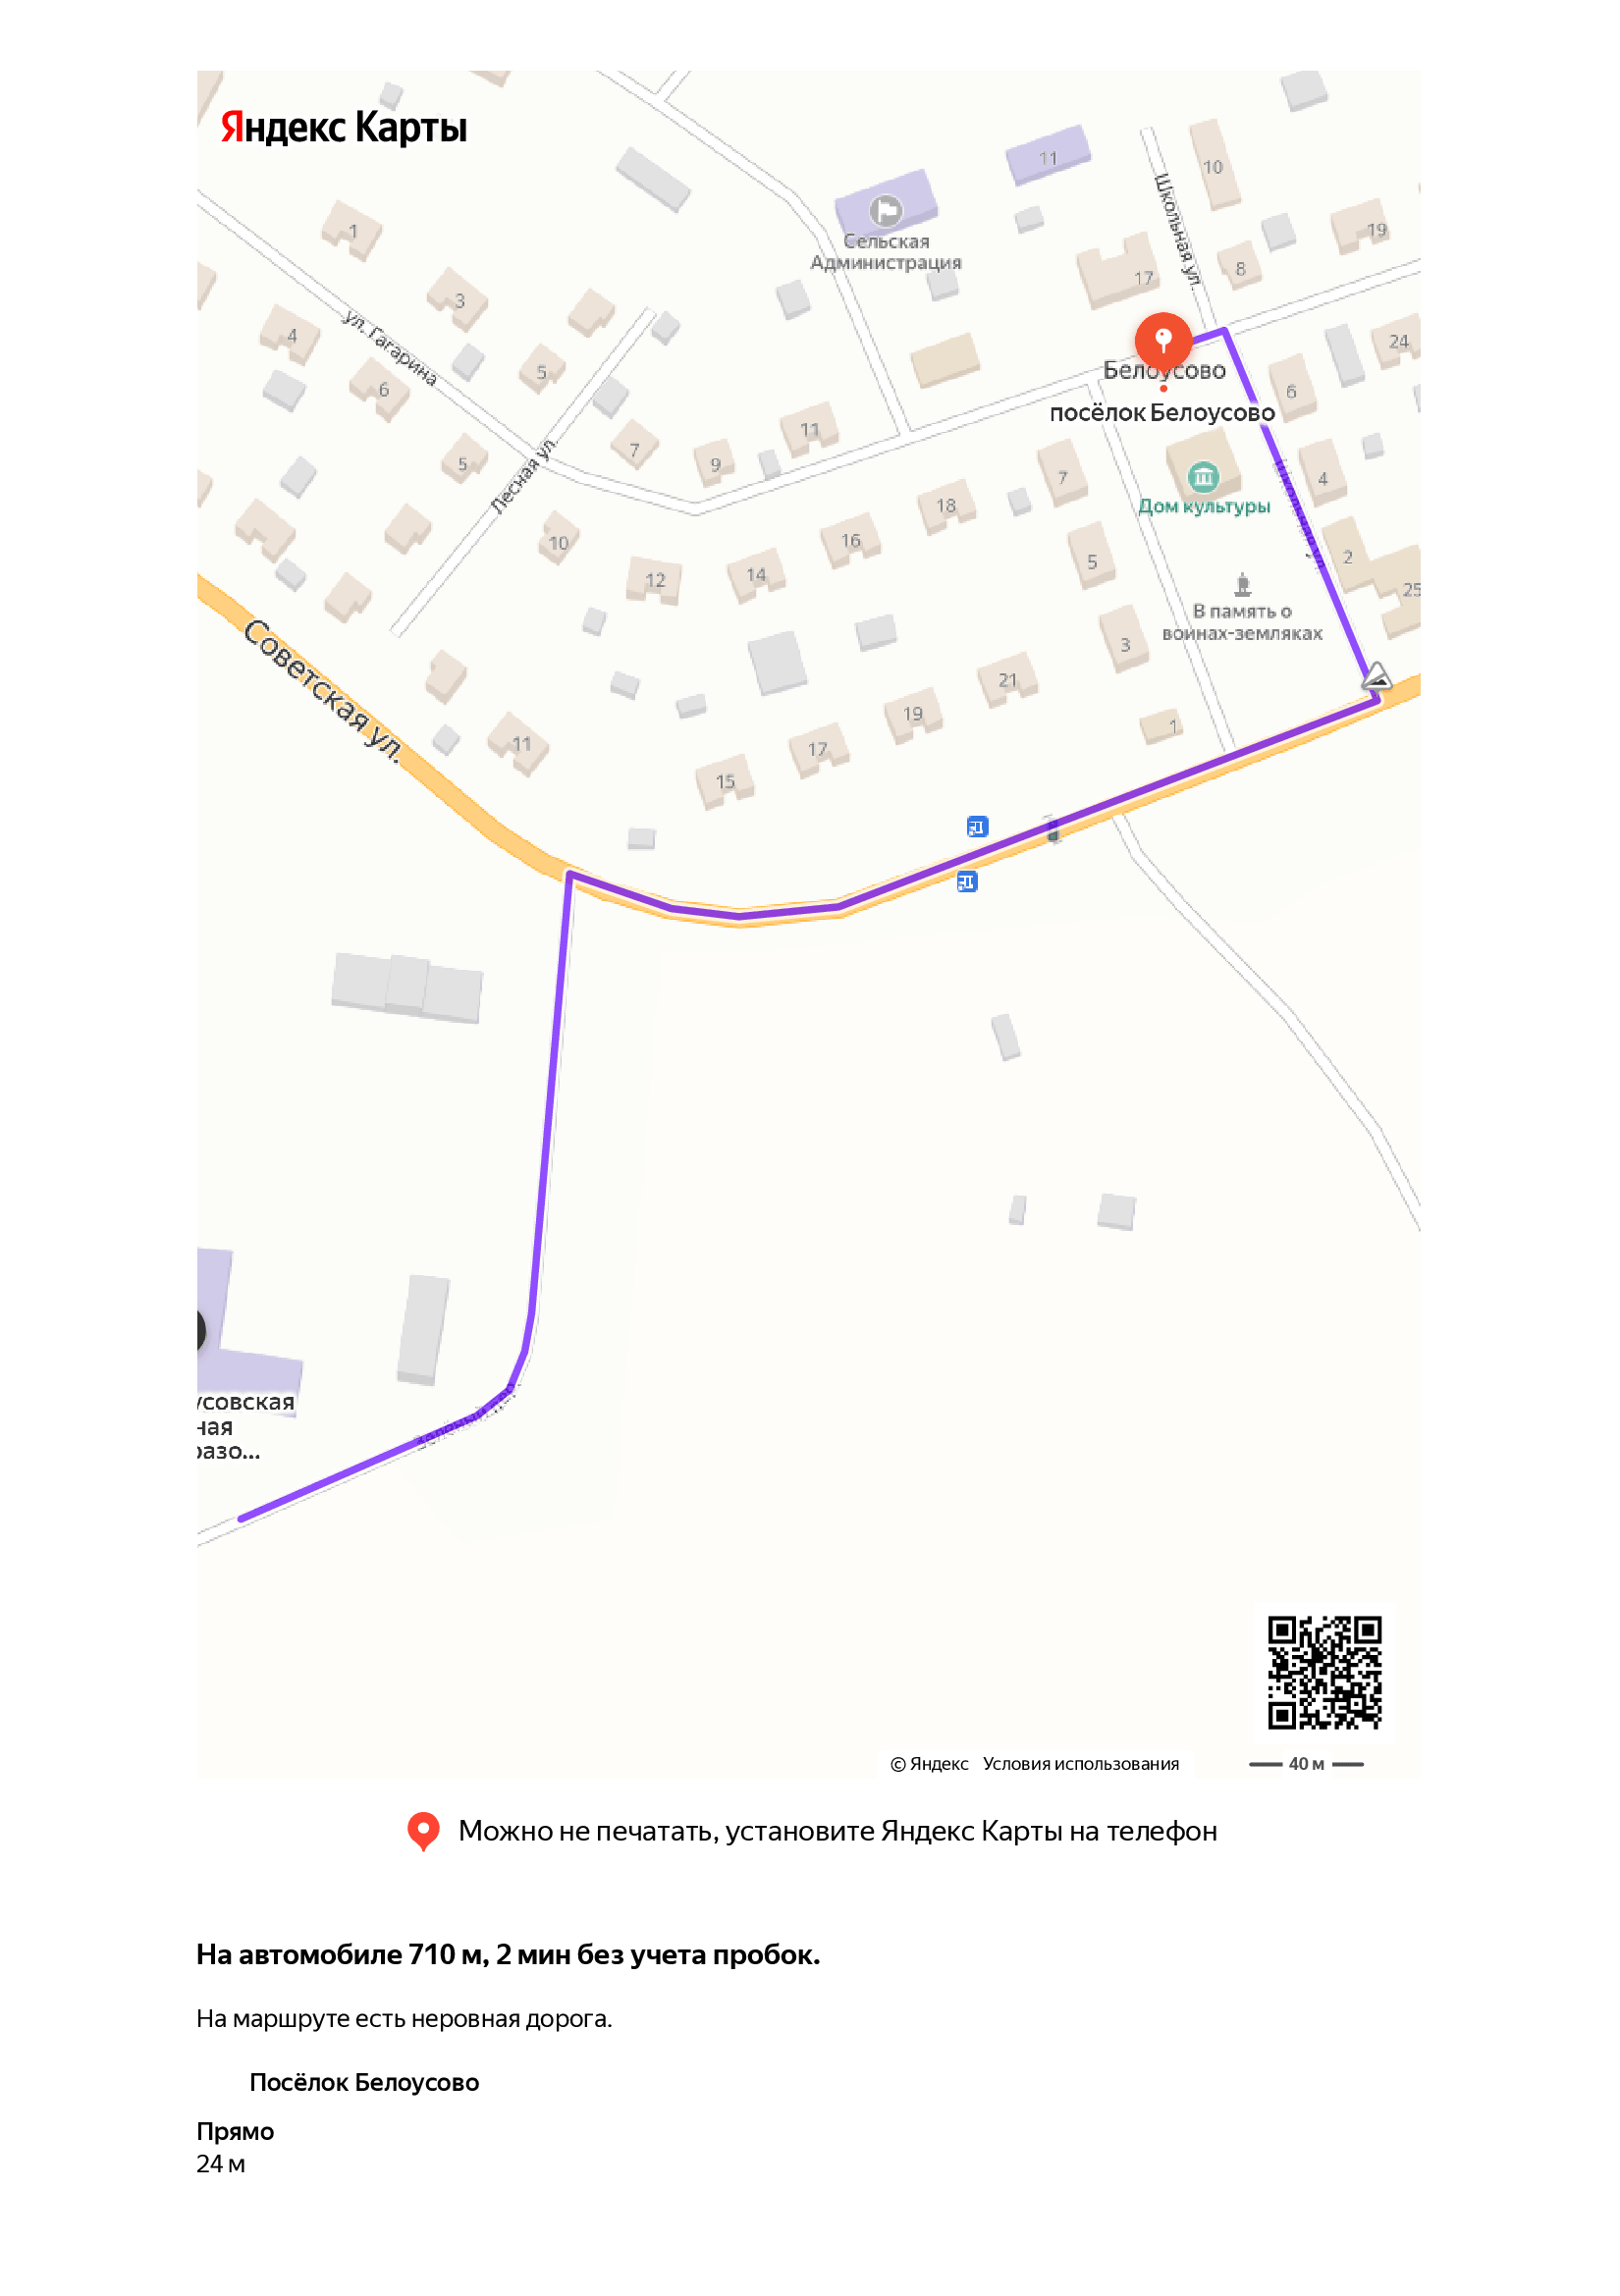 Схема маршрута от остановки в п.Белоусово до школы